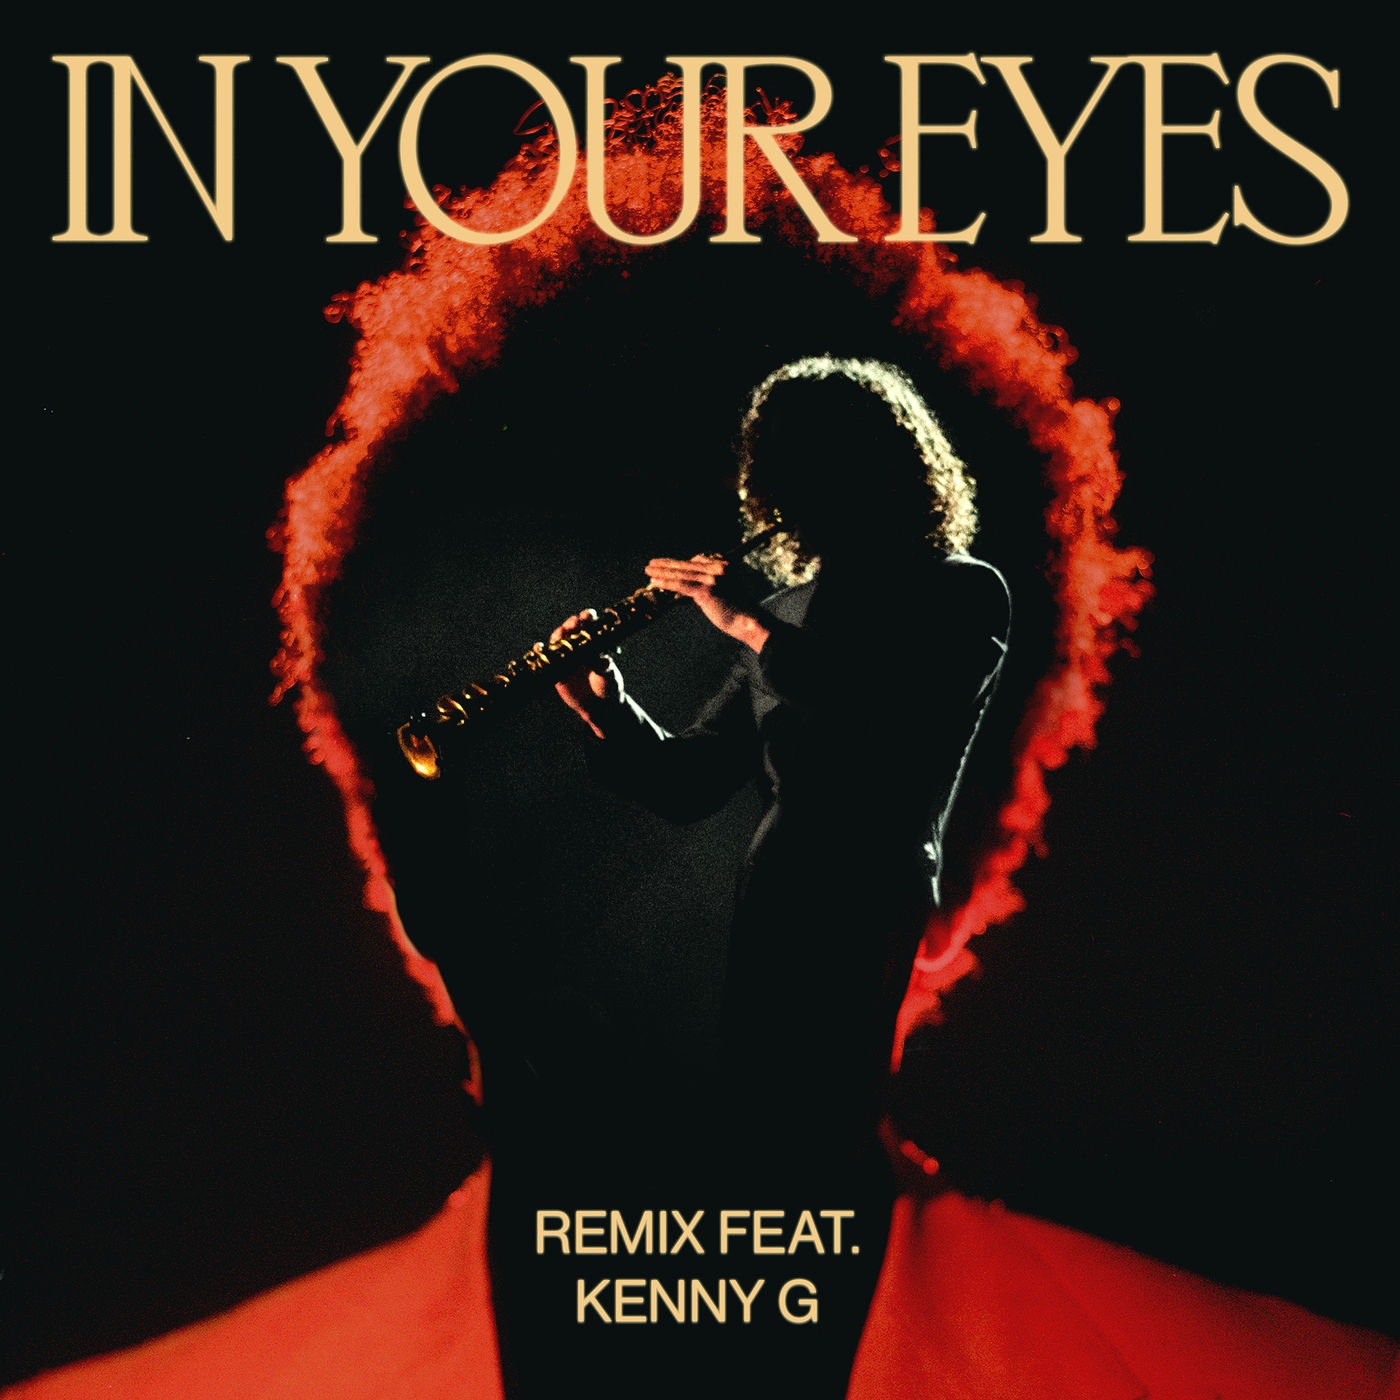 The Weeknd – In Your Eyes (Remix)【44.1kHz／16bit】rjldukl8ig4yc美国区-OppsUpro音乐帝国